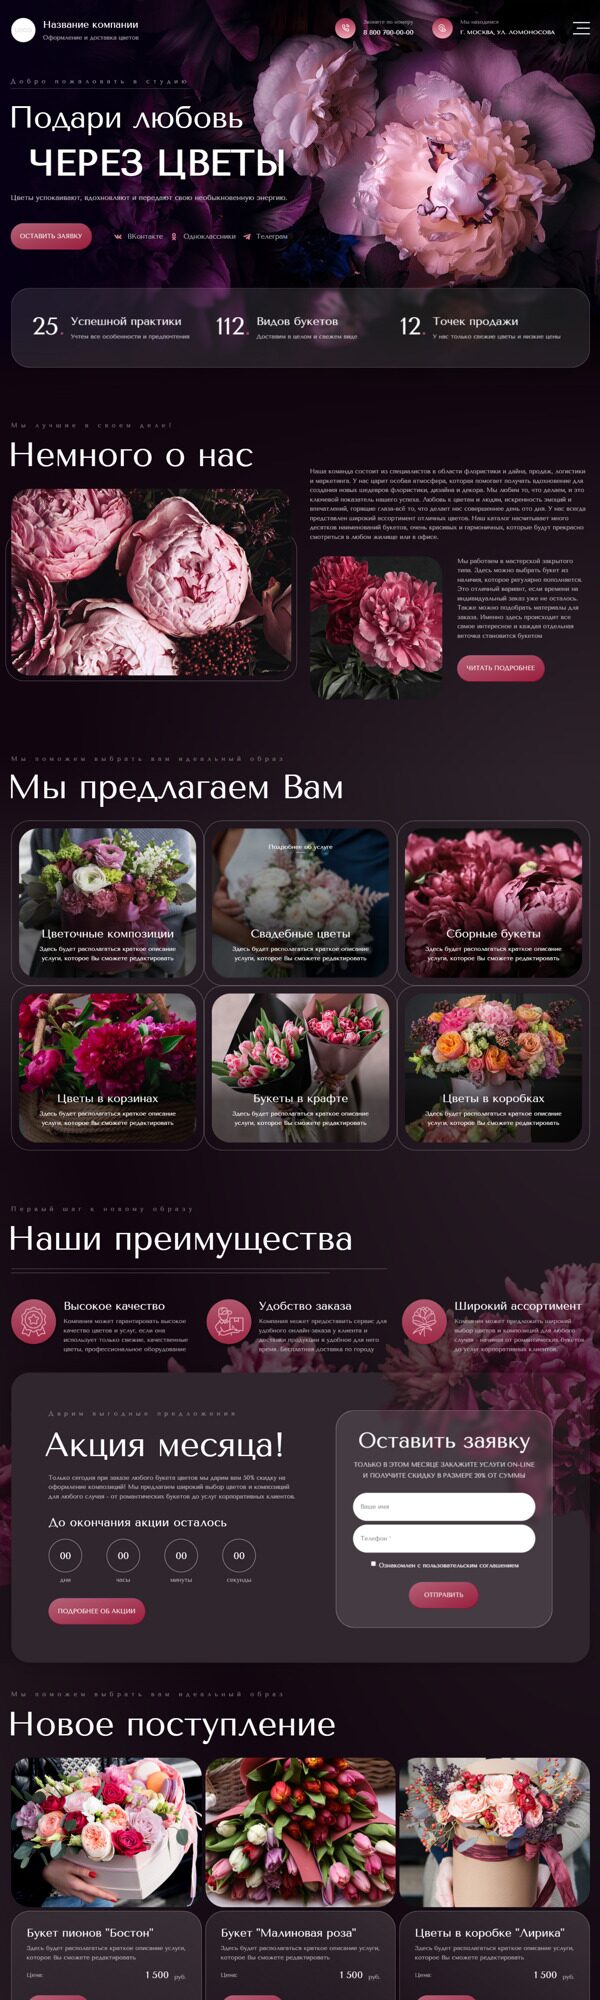 Готовый Сайт-Бизнес № 5227928 - Цветы, оформление, доставка цветов (Десктопная версия)